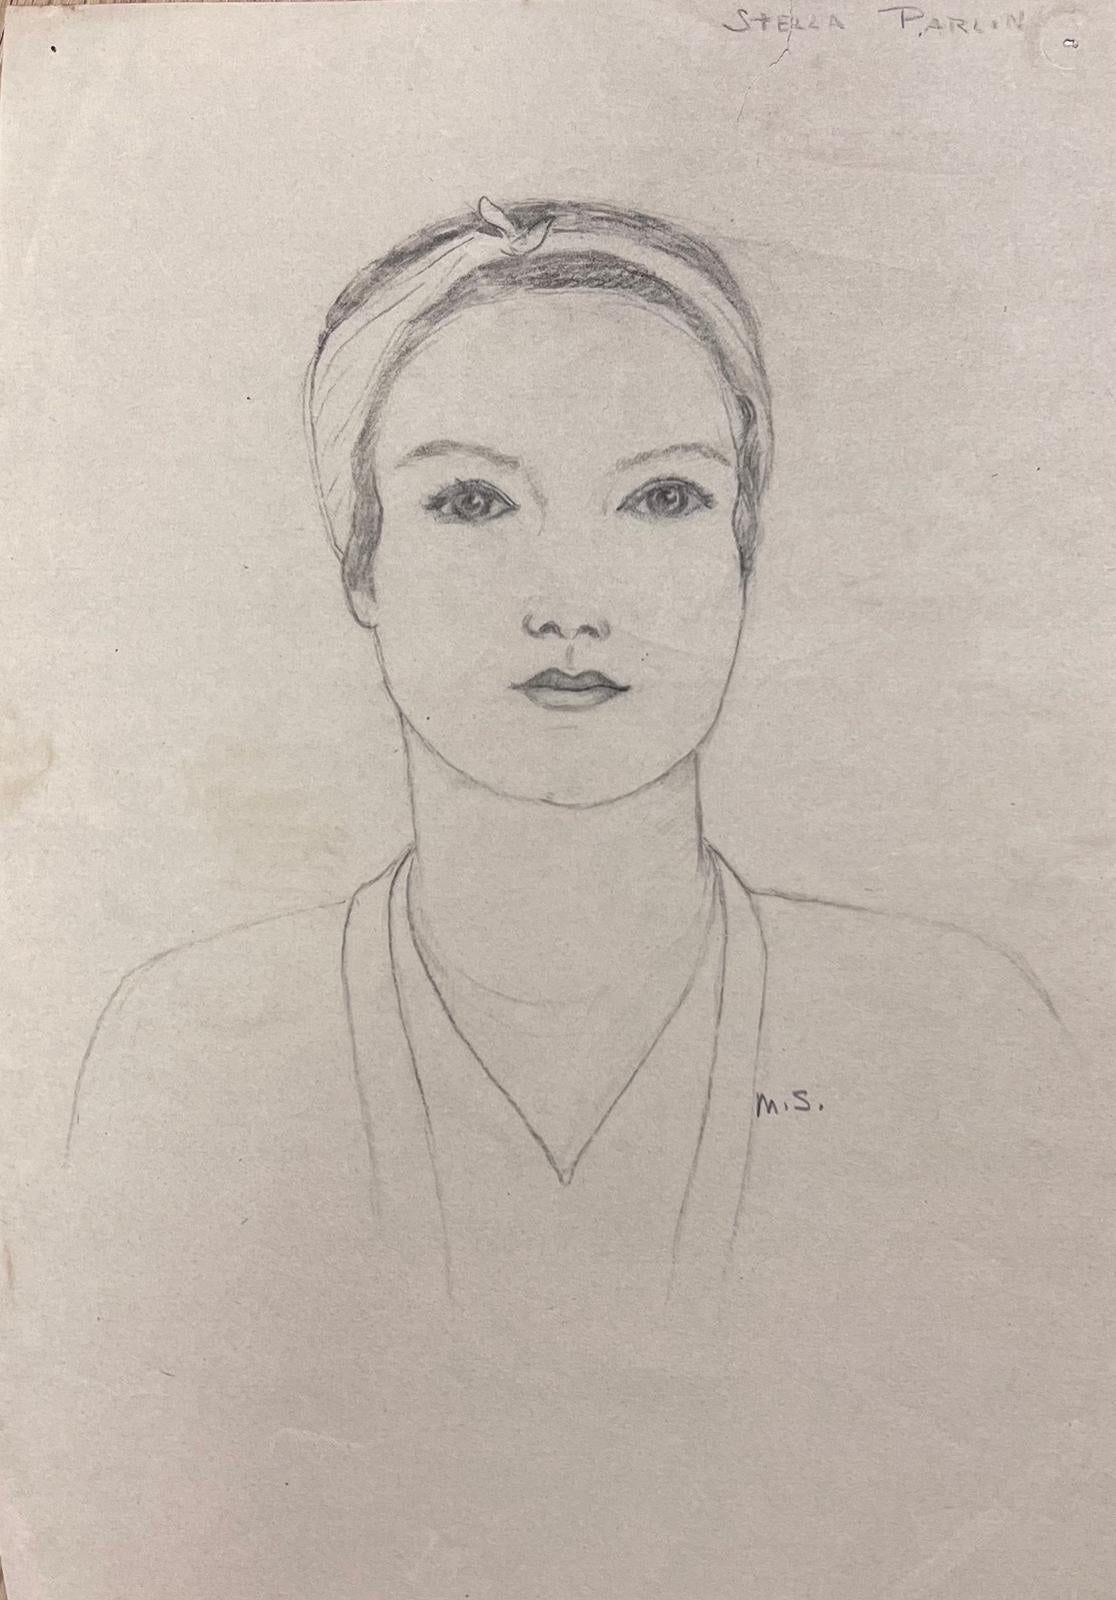 Élégant portrait de jeune femme de l'école de Paris, milieu du 20e siècle - Painting de Marjorie Schiele (1913-2008)